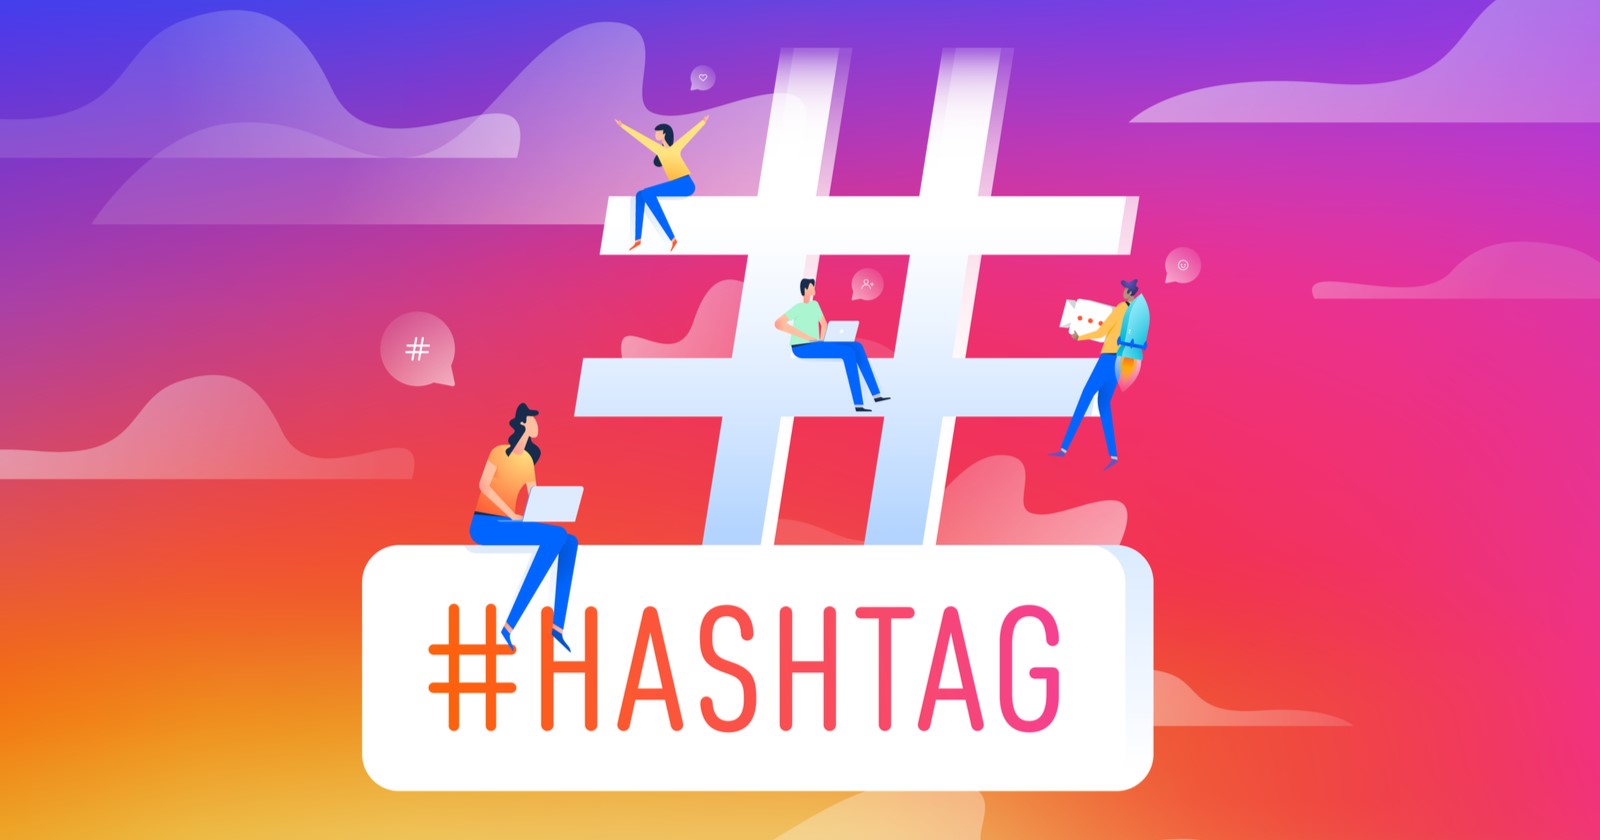 Use hashtags